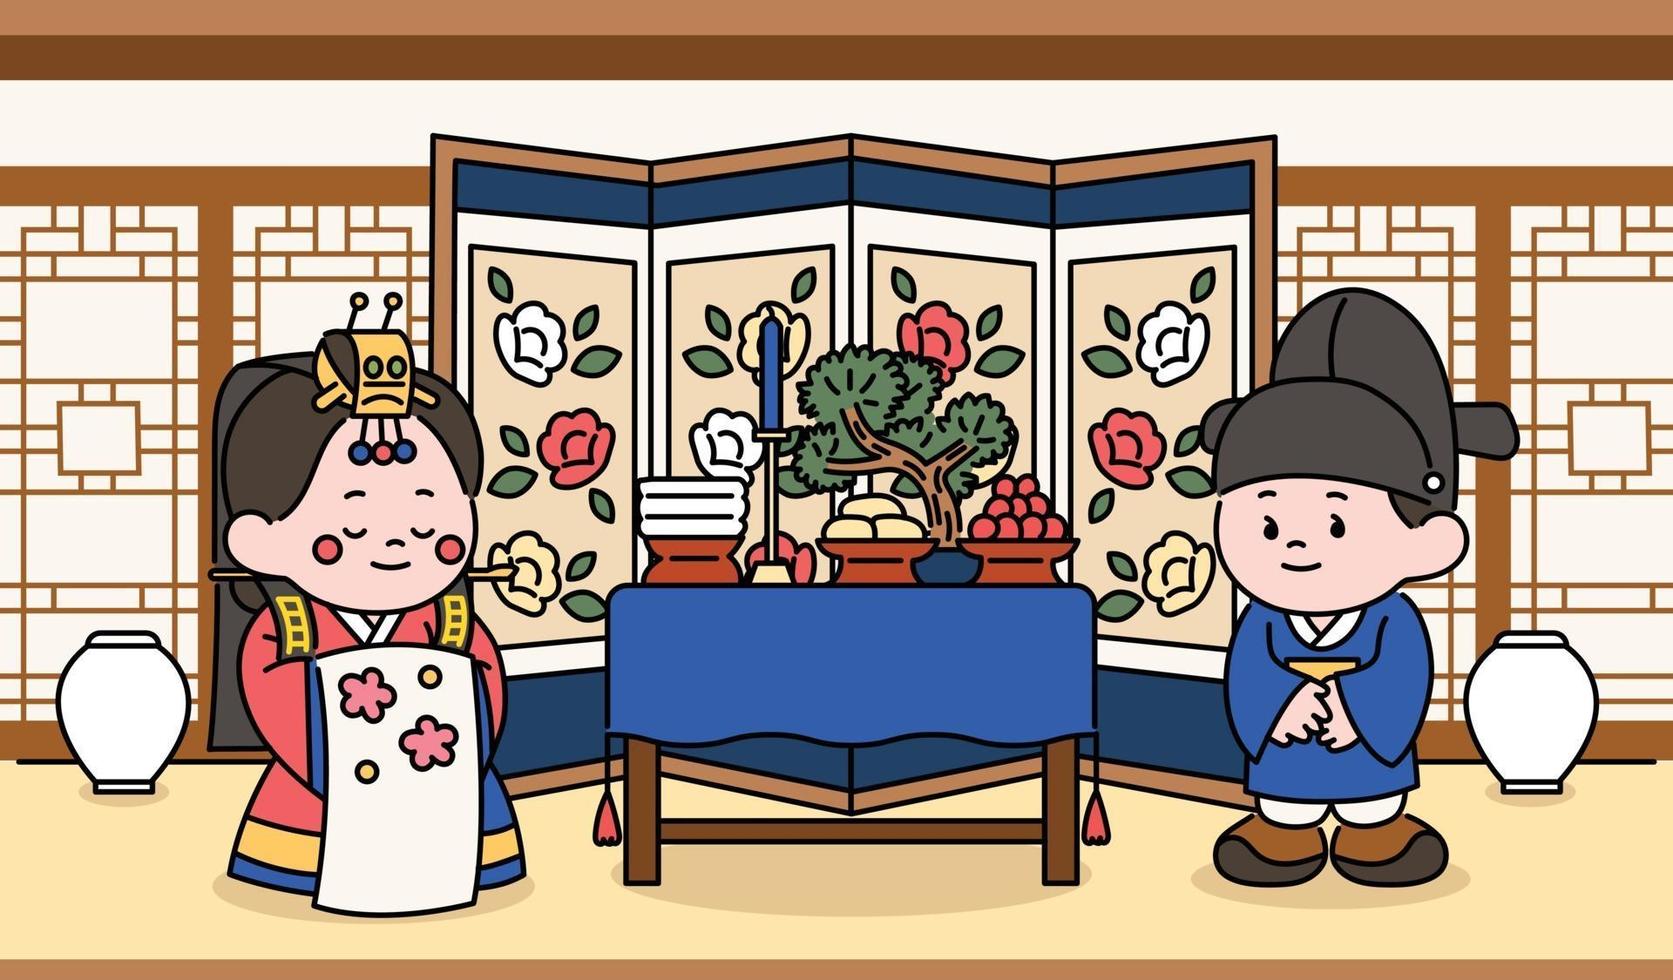 personaggi della sposa e dello sposo che celebrano una tradizionale cerimonia di matrimonio coreana. illustrazioni di disegno vettoriale stile disegnato a mano.